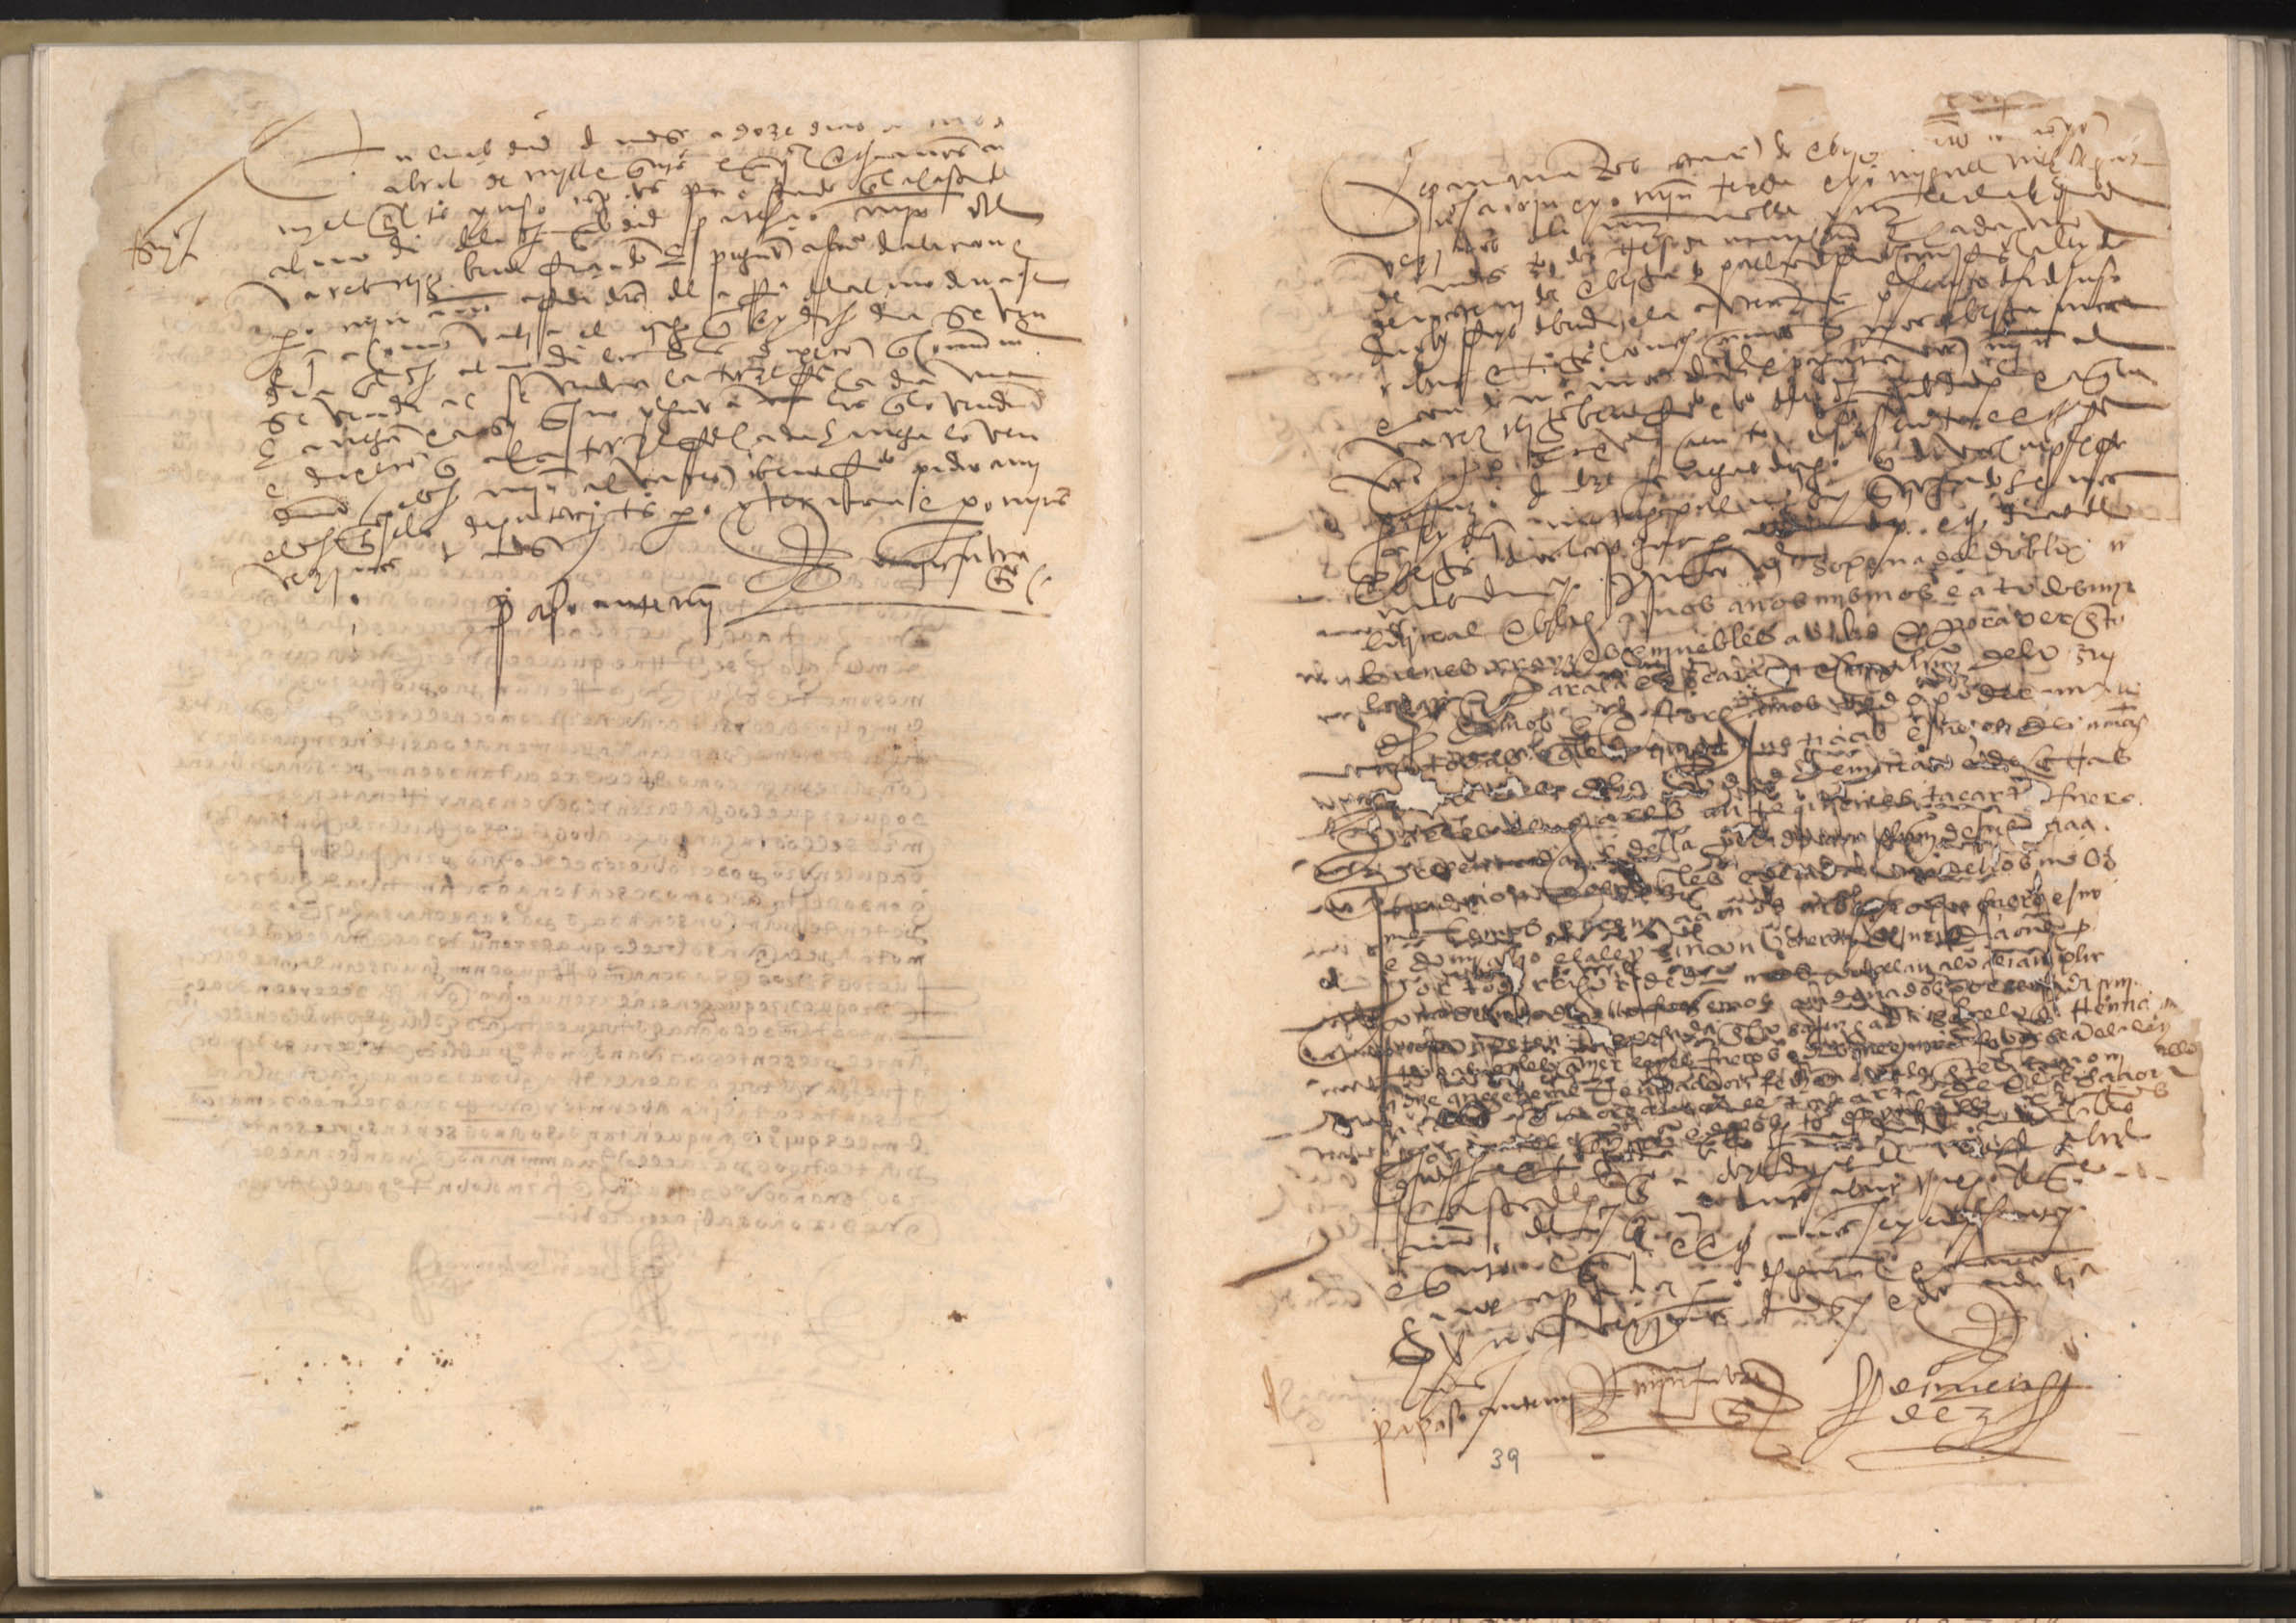 Registro de Martín Faura, Murcia de 1546-1560.